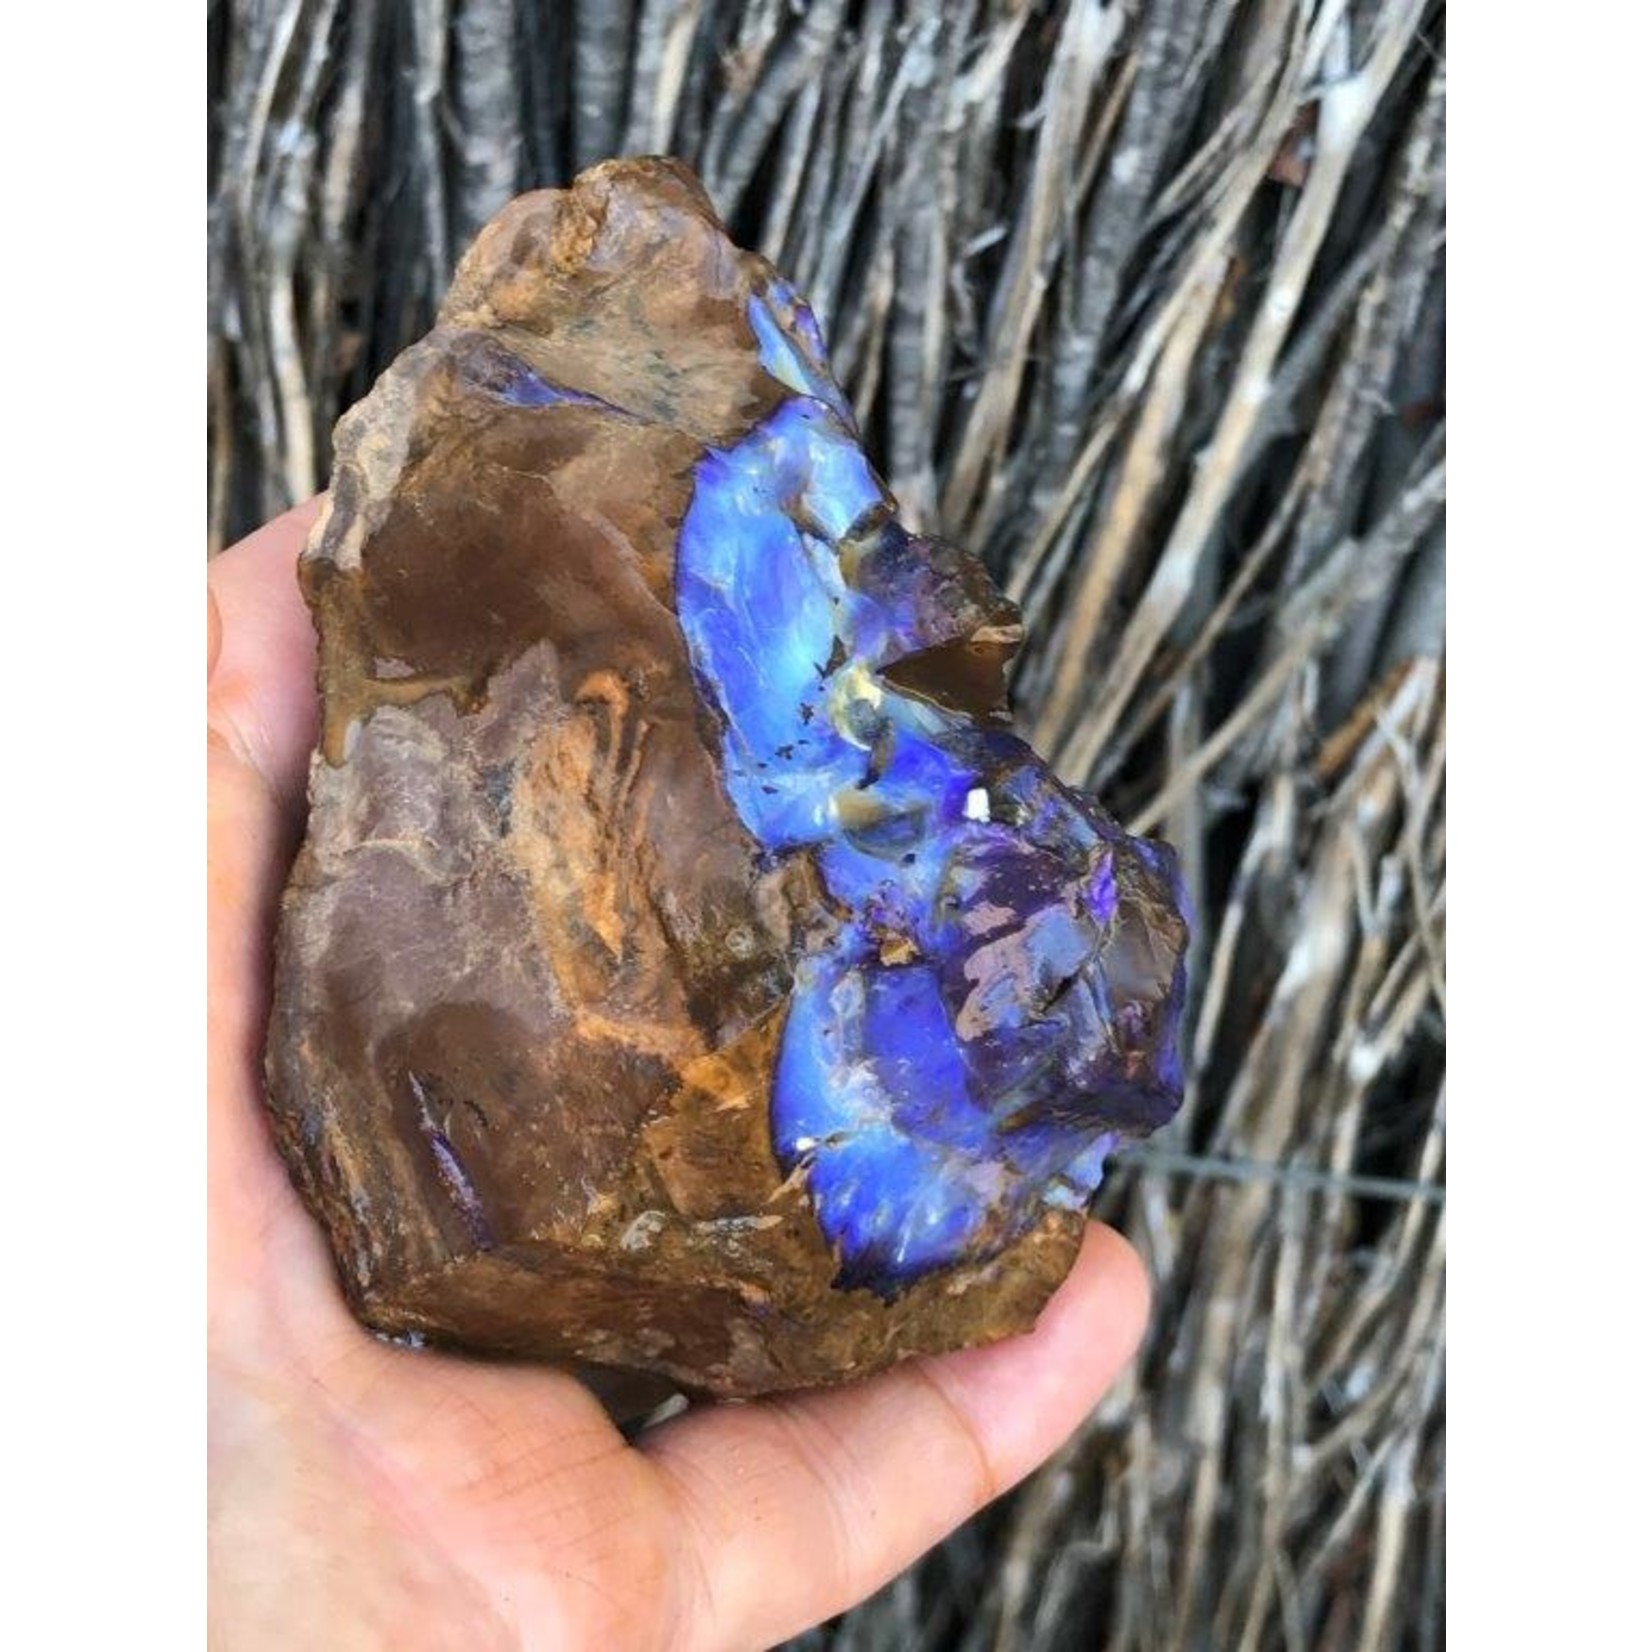 magnifique opale boulder de l'Australie, influence la circulation sanguine et apaise les sautes d'humeur et renforce la confiance en soi